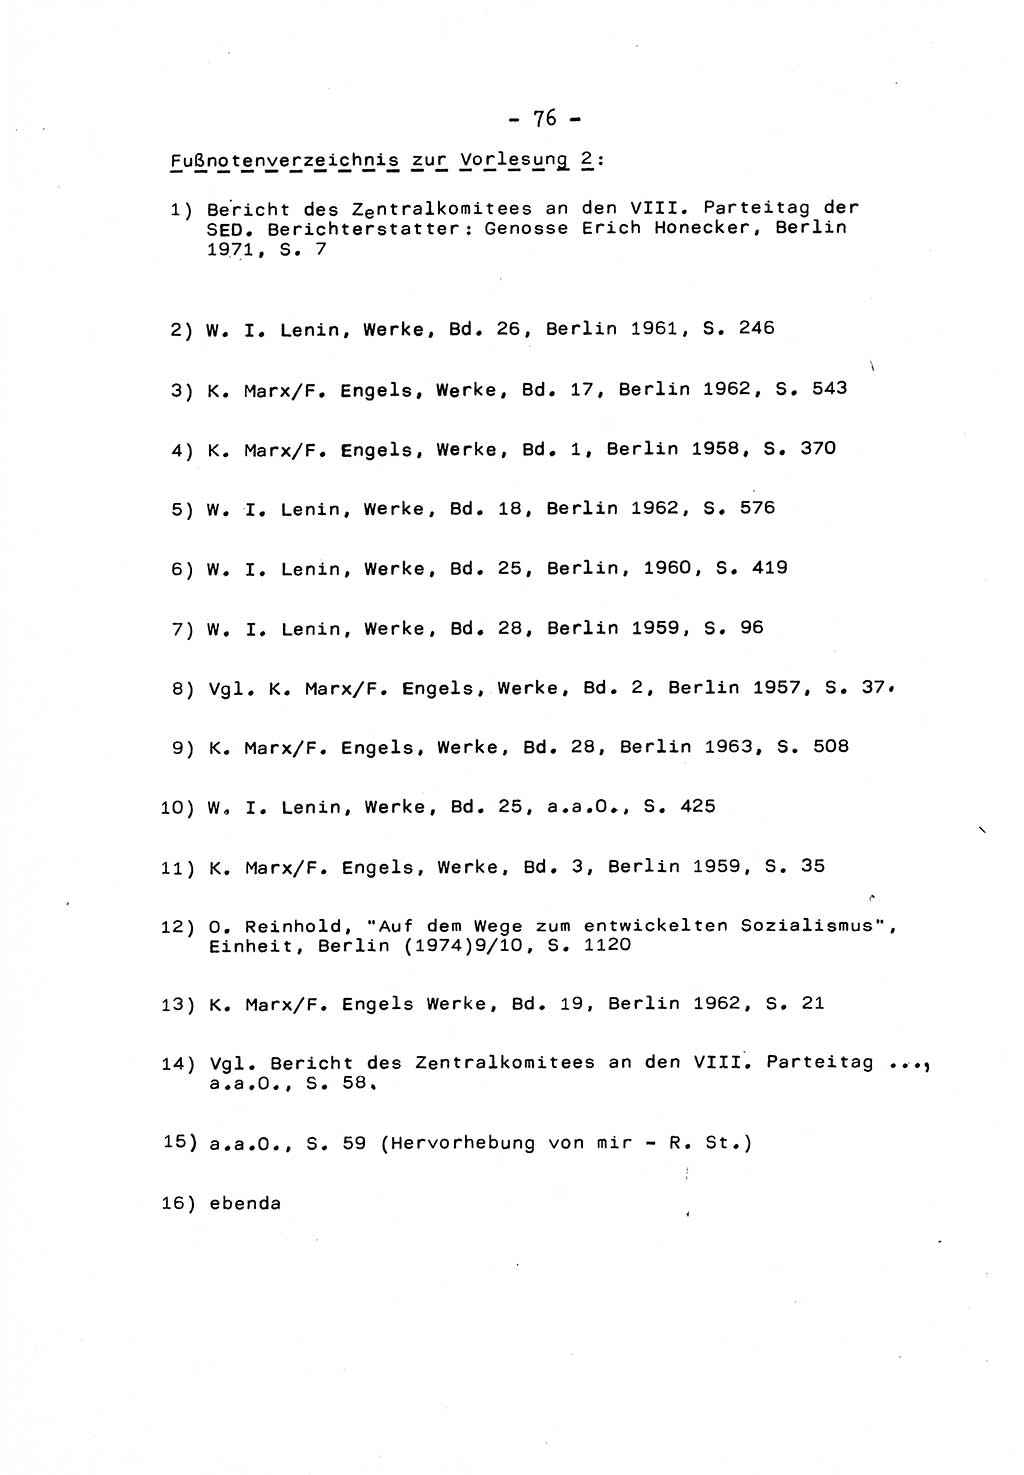 Marxistisch-leninistische Staats- und Rechtstheorie [Deutsche Demokratische Republik (DDR)] 1975, Seite 76 (ML St.-R.-Th. DDR 1975, S. 76)